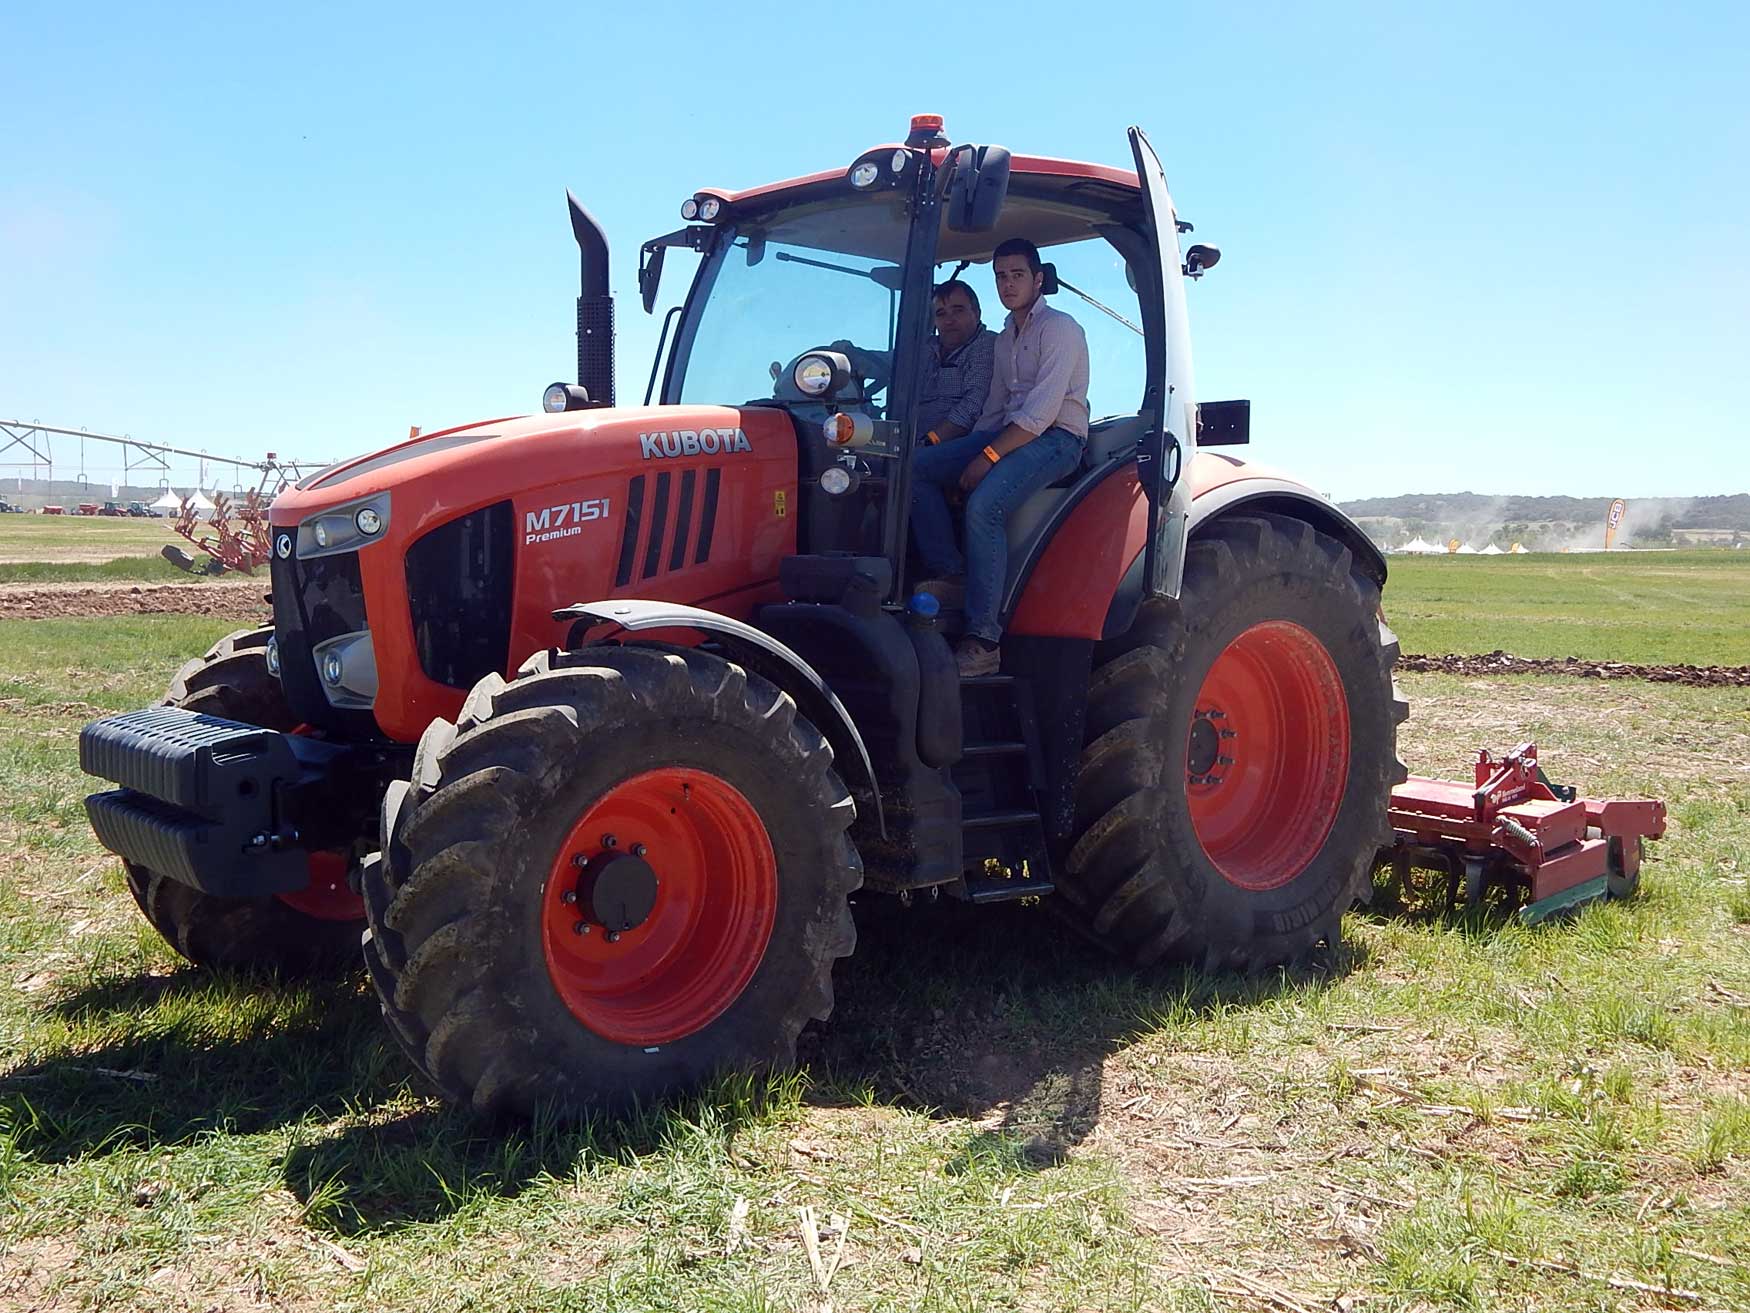 Antonio Higuera, propietario del concesionario segoviano Agrocomercial Higuera, montado junto a su hijo en el nuevo M7151 Premium...